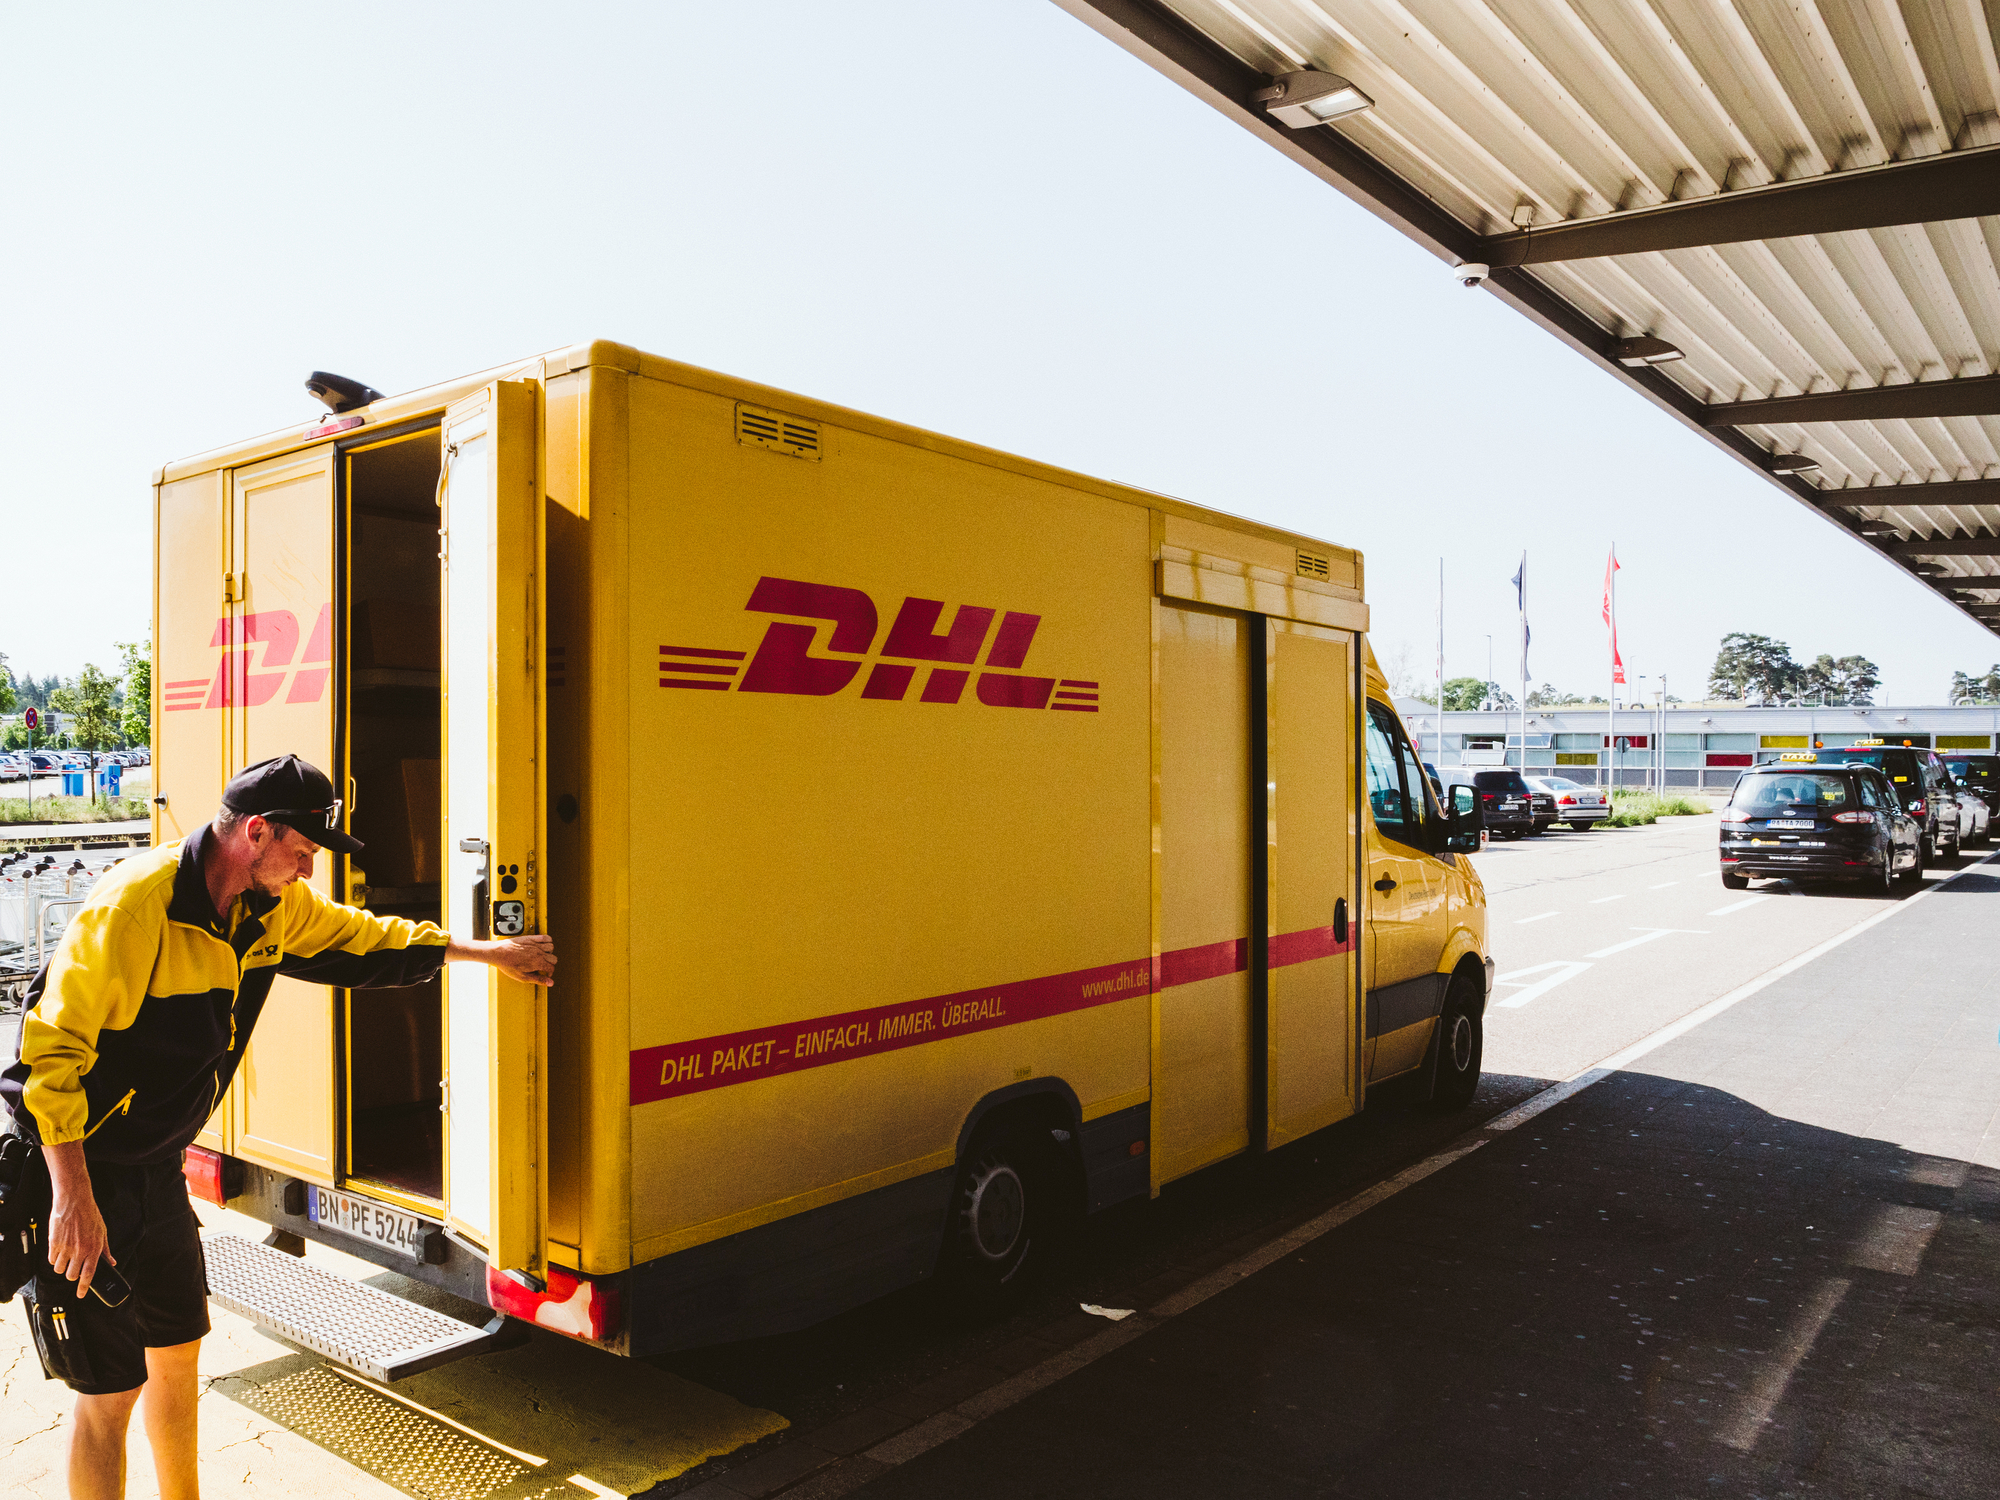 «Нова Пошта» в Європі здатна конкурувати з DHL. Про експортний потенціал українських сервісів й товарів 